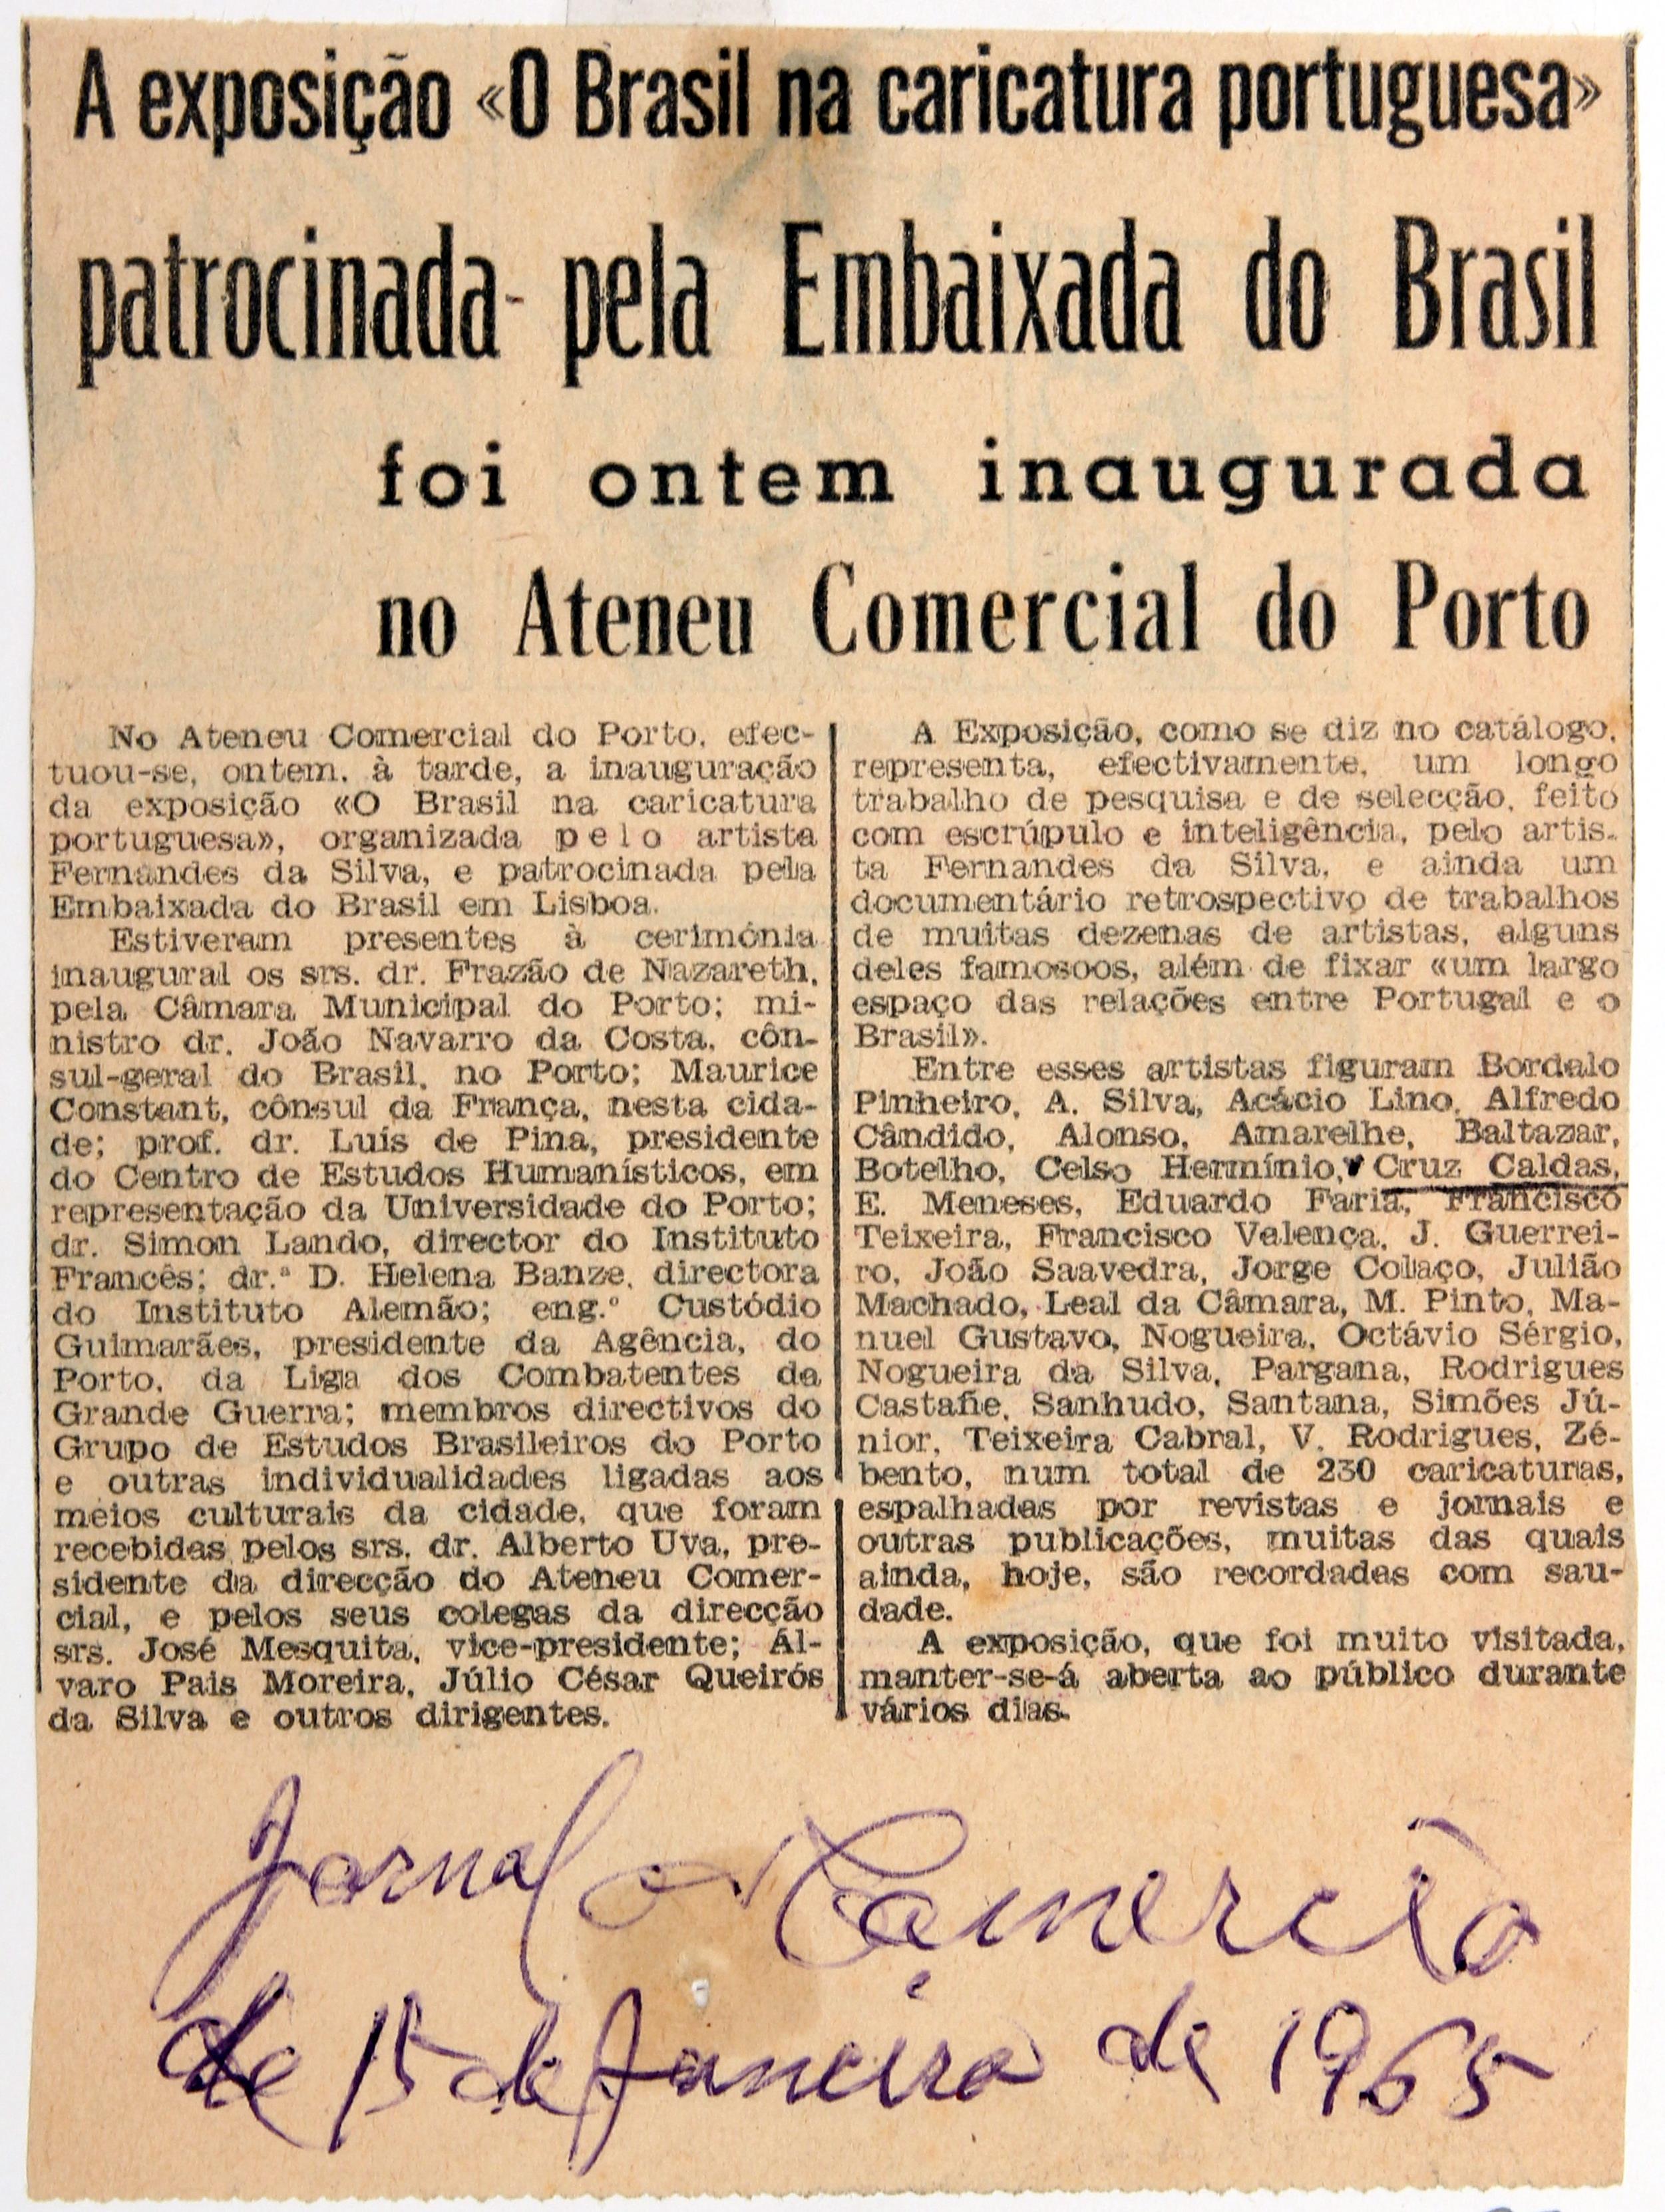 Cruz Caldas (3) : 1946-1965 : «O Comércio do Porto» : a exposição «o Brasil na caricatura portuguesa» () foi ontem inaugurada no Ateneu Comercial do Porto